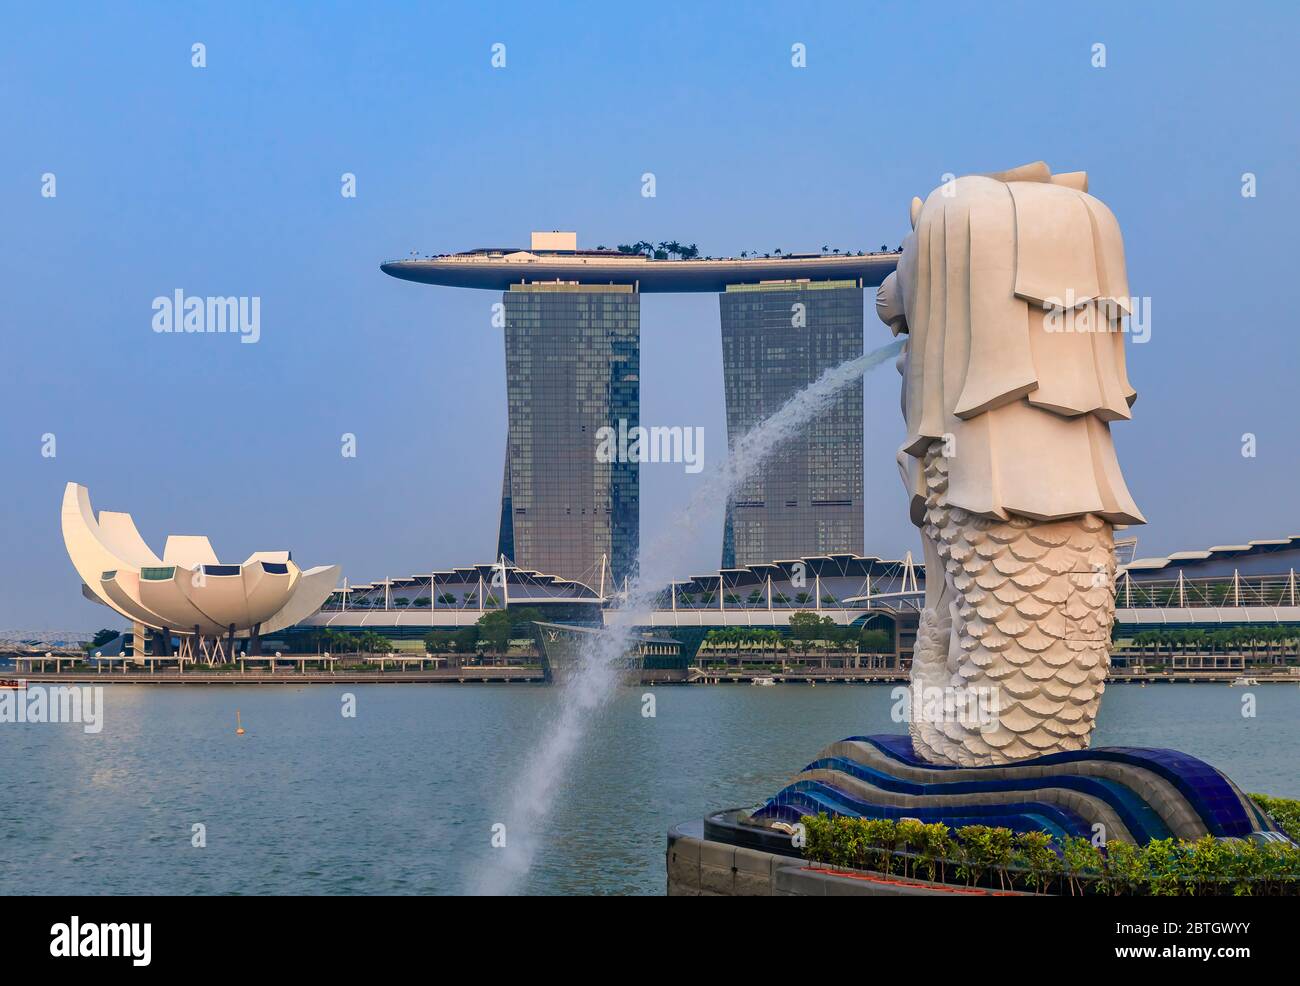 Singapour - 9 septembre 2019 : célèbre hôtel de luxe et casino en forme de surf Marina Bay Sands avec la célèbre fontaine Merlion en premier plan Banque D'Images